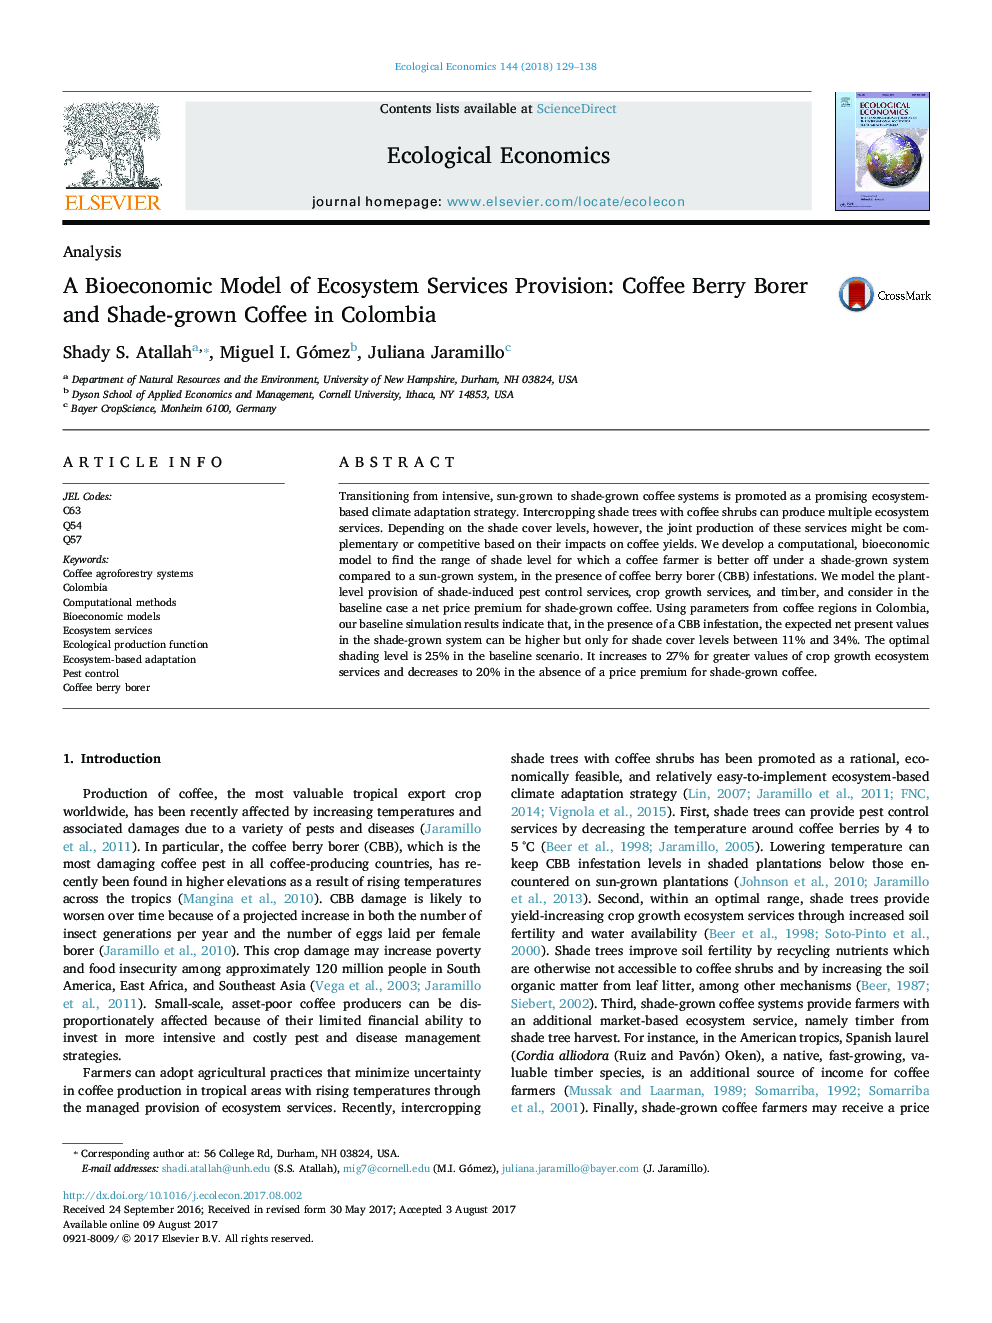 یک مدل بی بیوژیک ارائه خدمات خدمات اکوسیستم: قهوه بری قهوه و قهوه شاد در کلمبیا